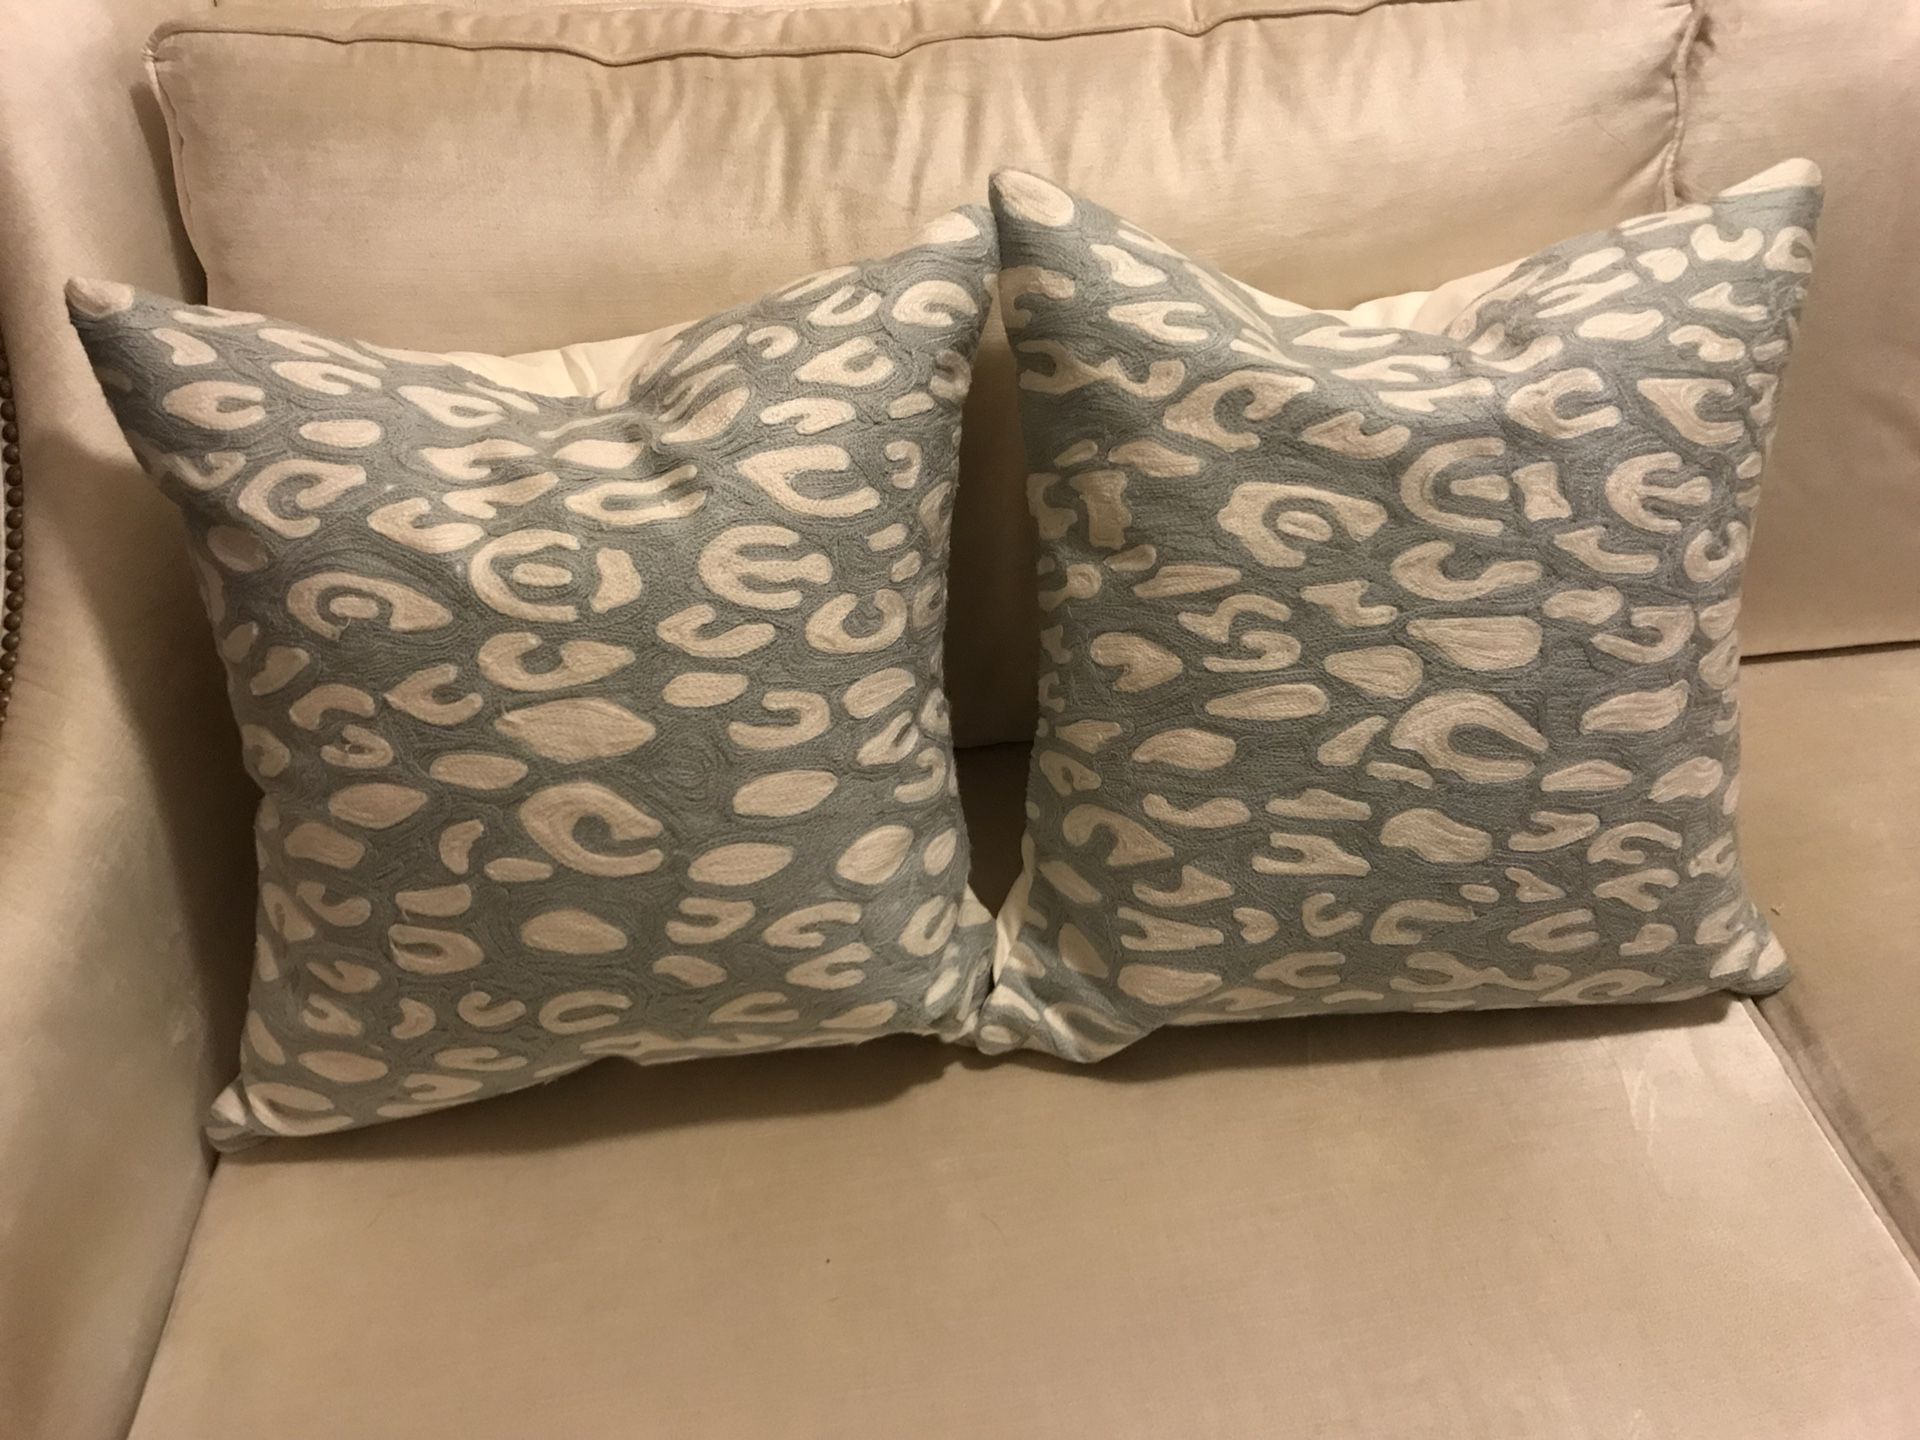 Two West Elm 20” Down Pillows Throw Pillows Sofa Cushions